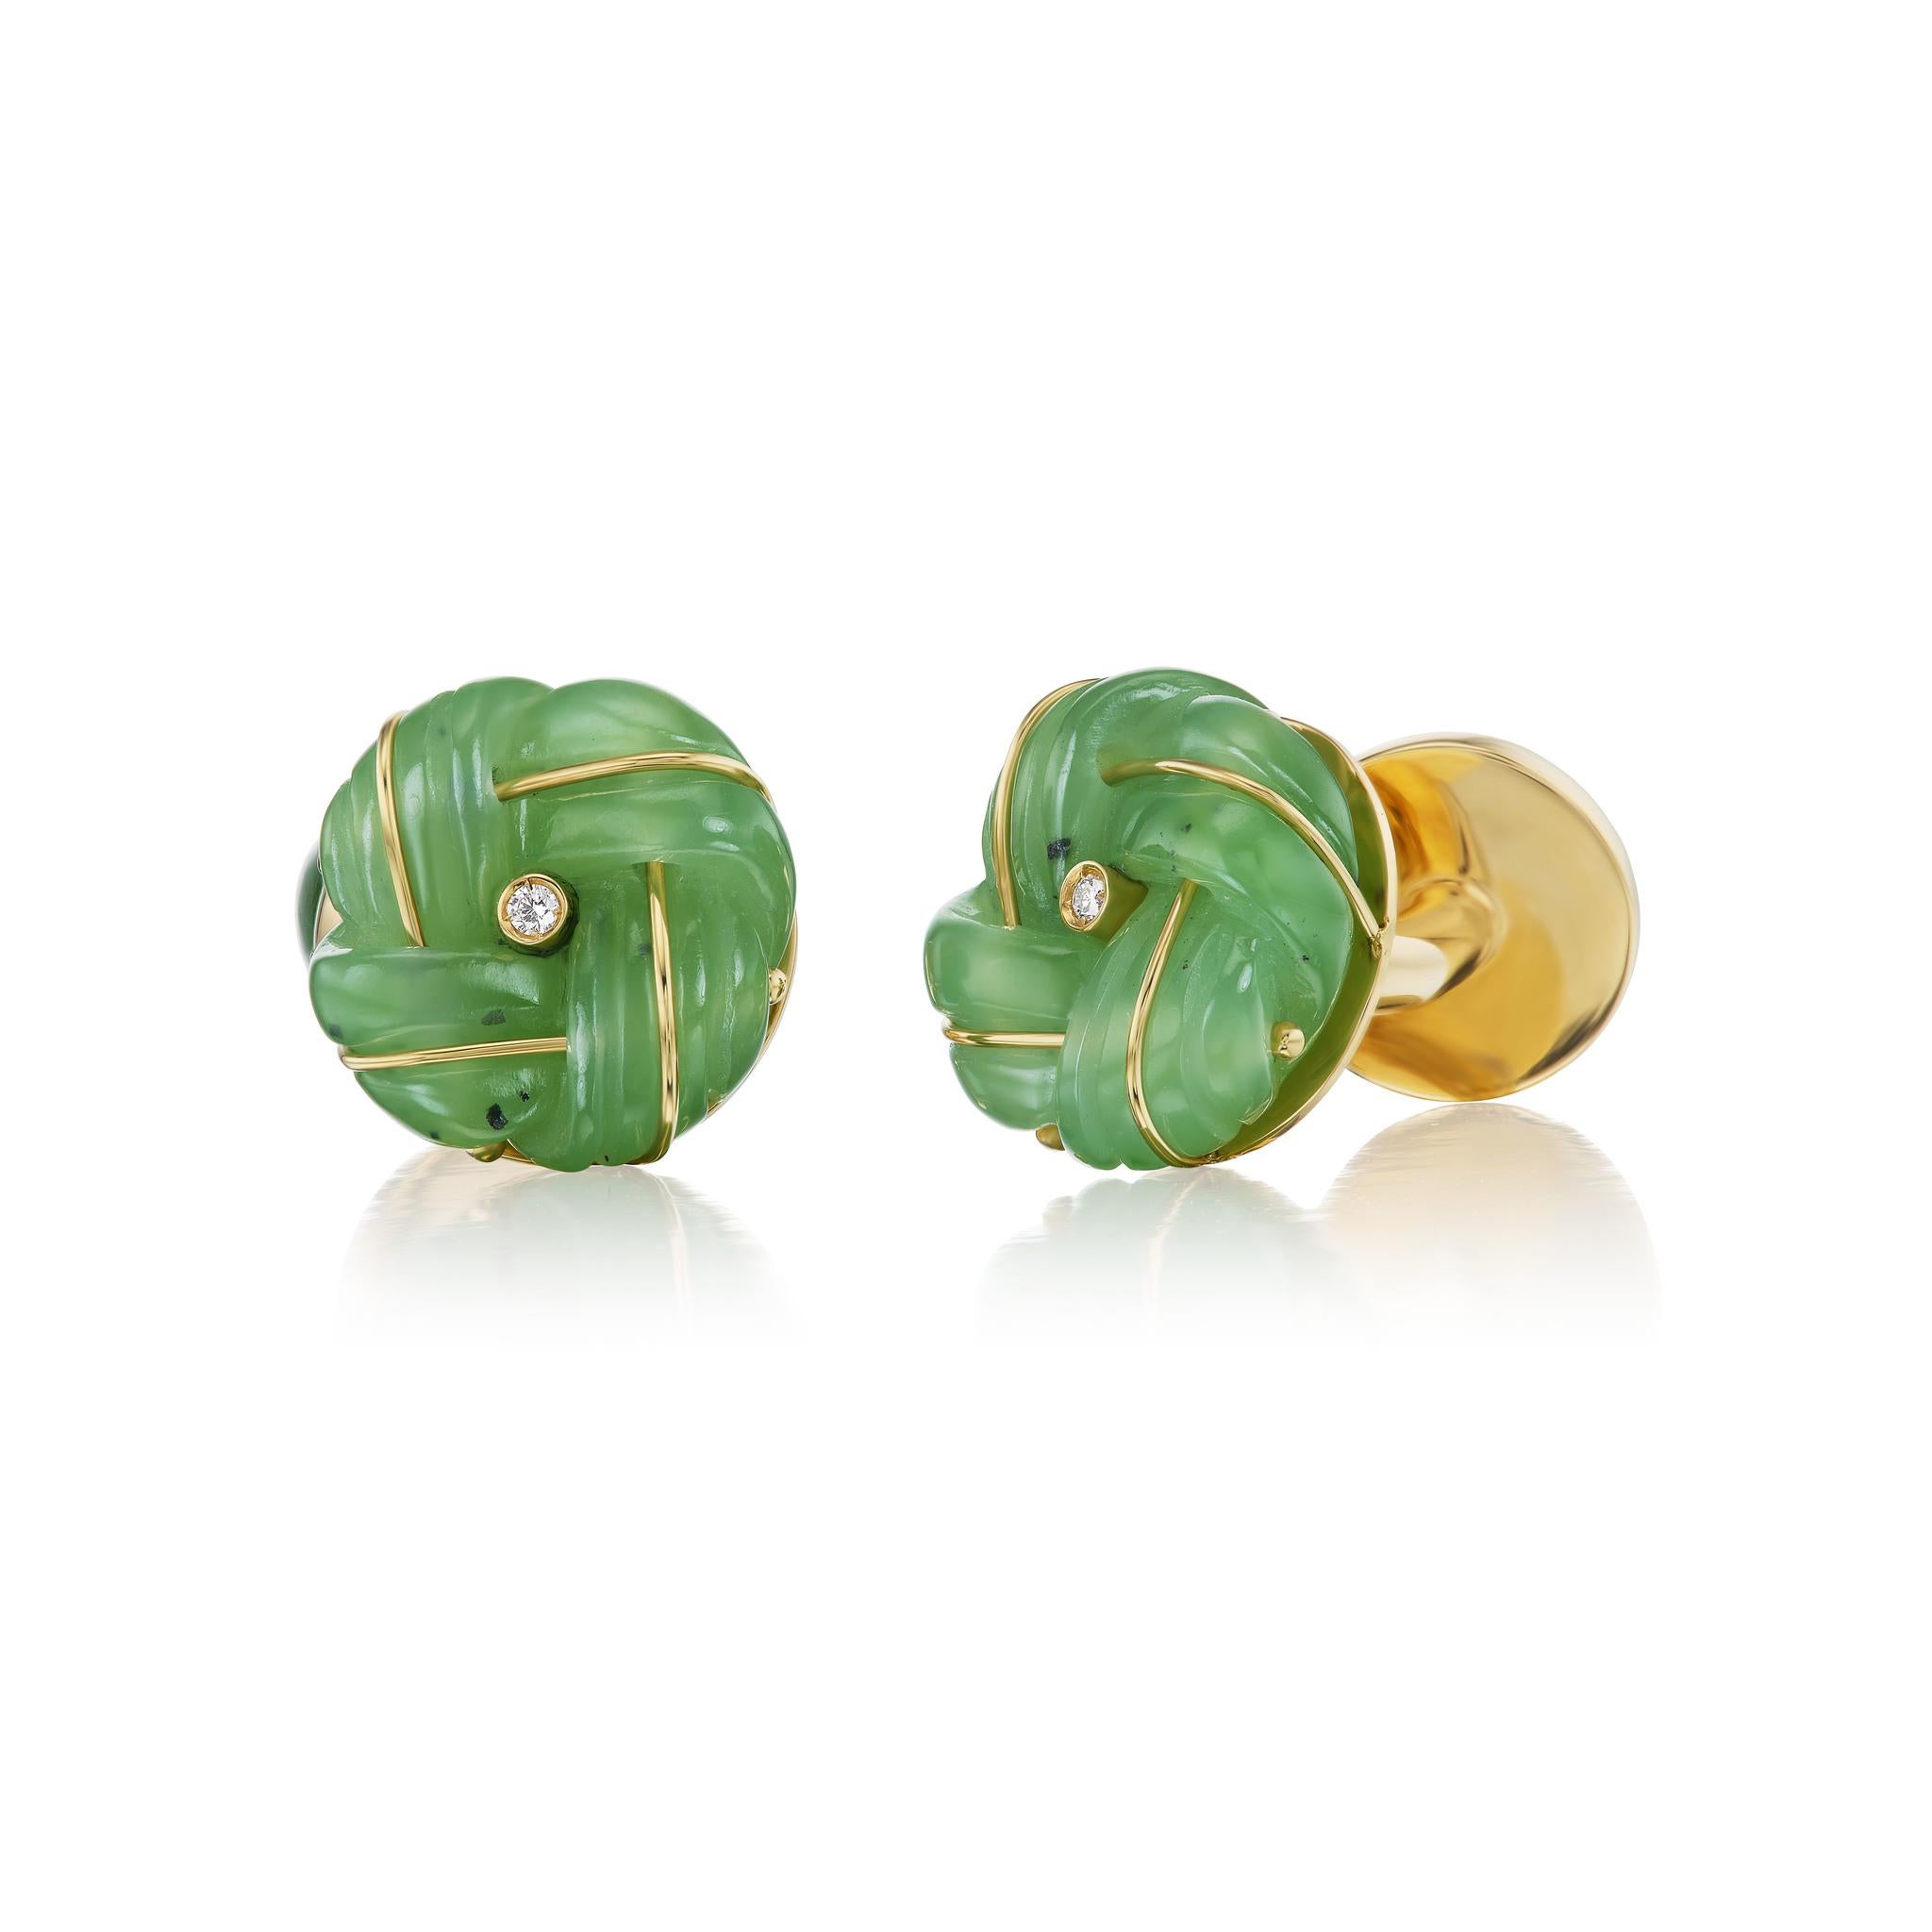 Der klassische Manschettenknopf mit Knoten, neu interpretiert in geschnitzter Jade und diskret verziert mit Gold und Diamanten.  

Manschettenknöpfe mit Knoten stammen aus dem frühen 20. Jahrhundert und wurden ursprünglich von dem französischen